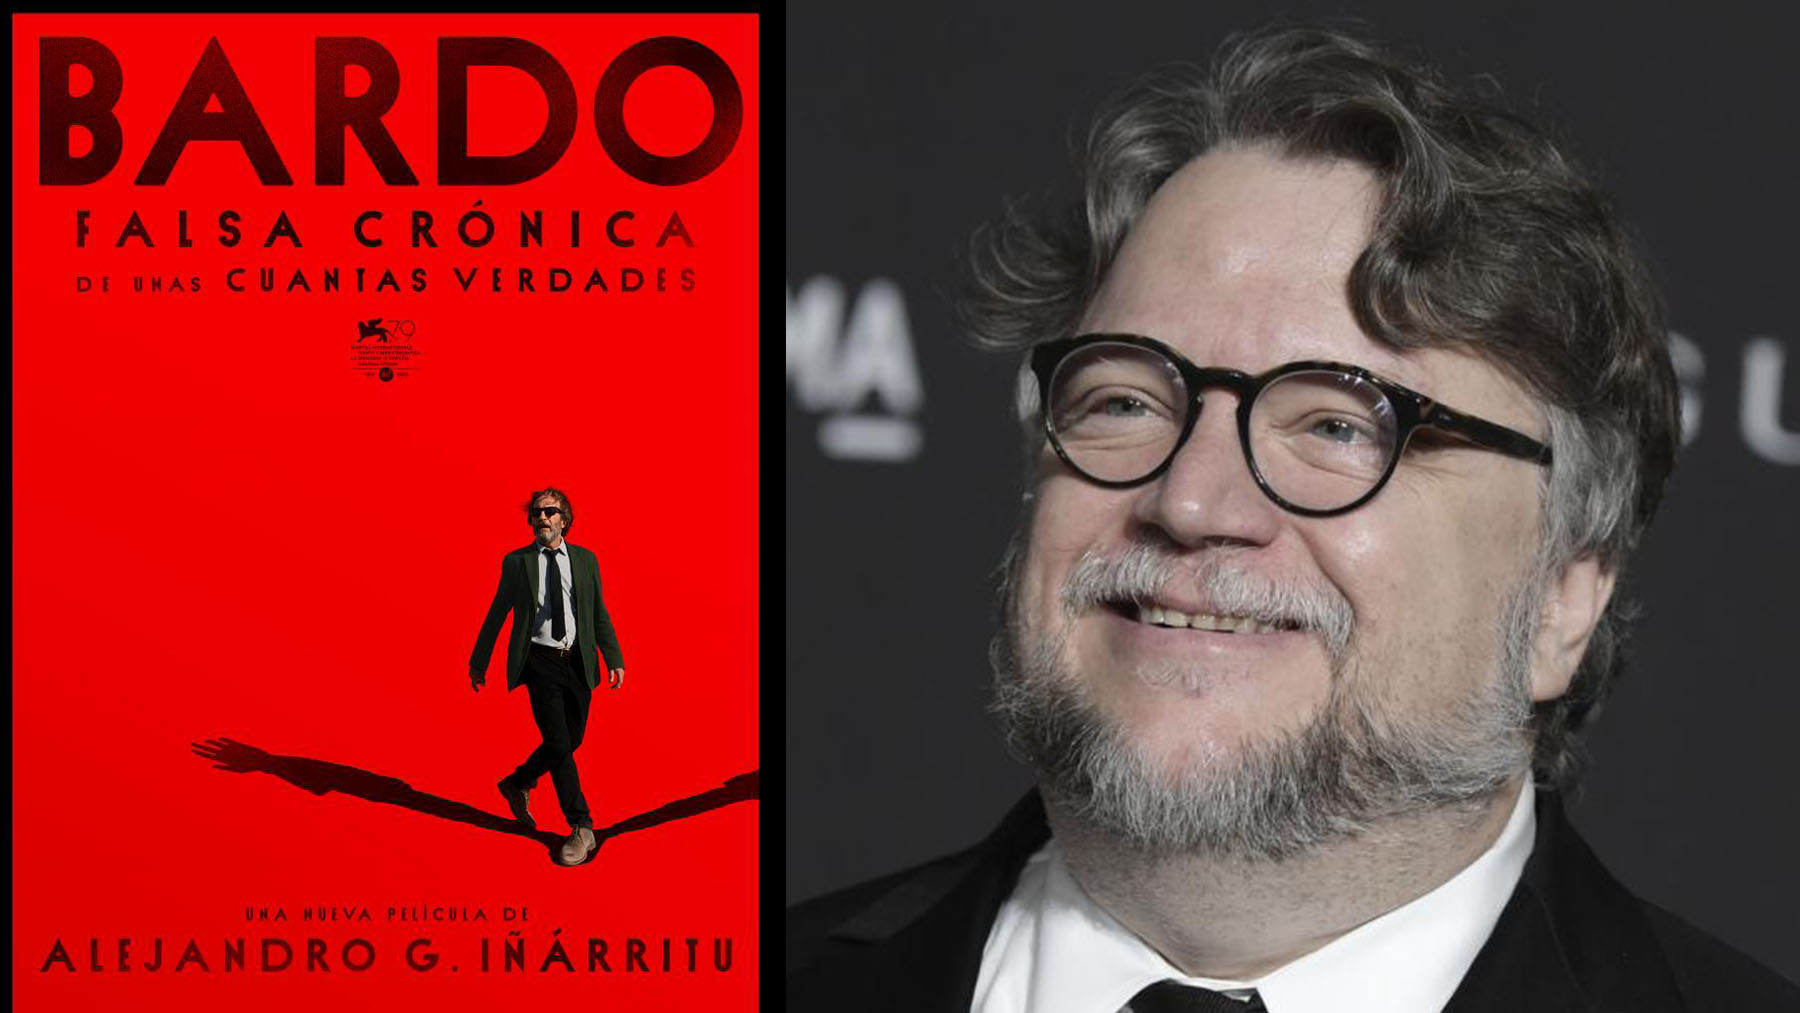 El director Guillermo del Toro ha defendido ‘Bardo’, la última película de Alejandro González Iñárritu